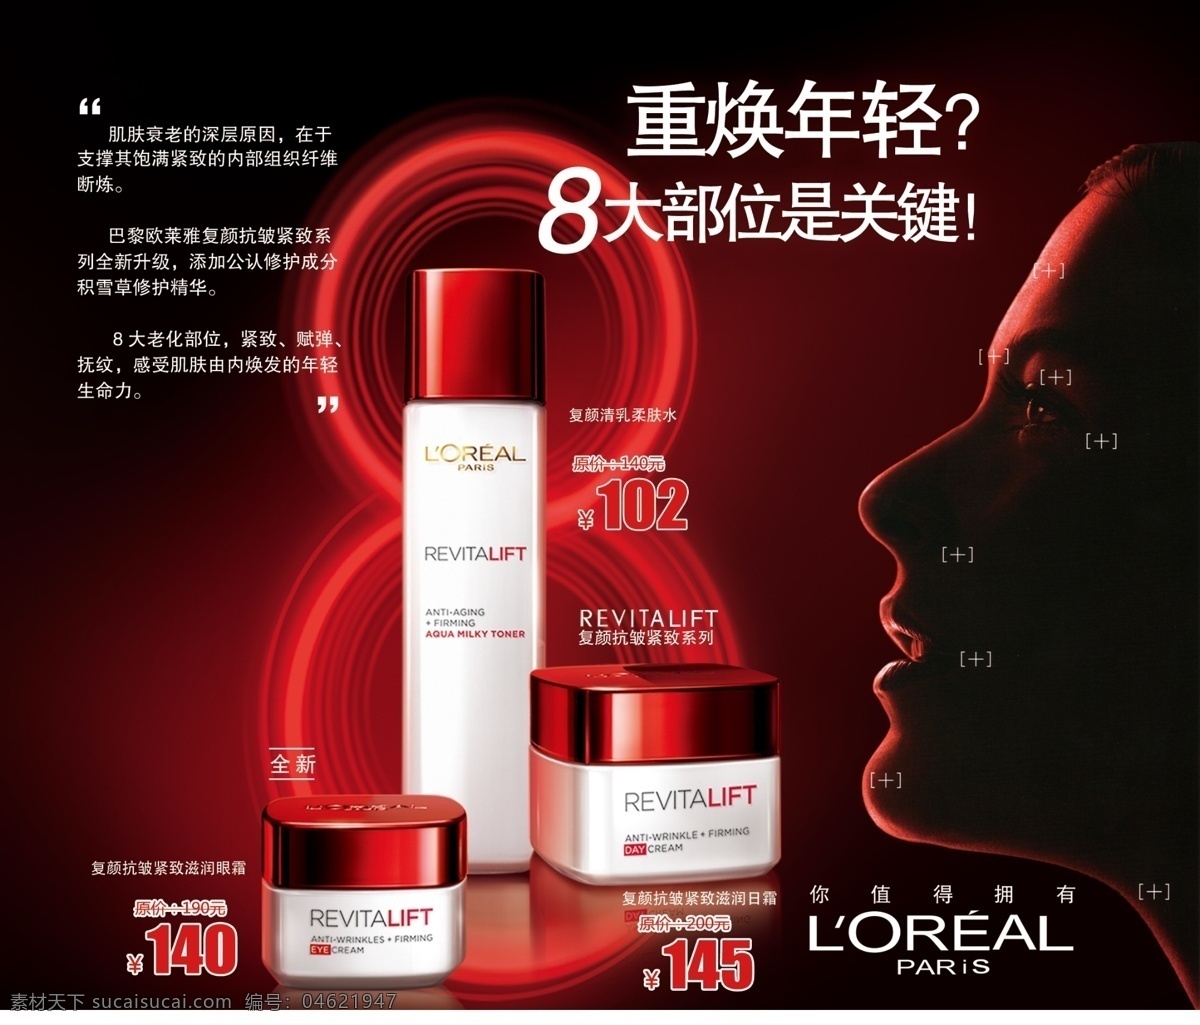 欧莱雅广告图 欧莱雅 复颜抗皱系列 化妆品 红色 8大部位 广告设计模板 源文件